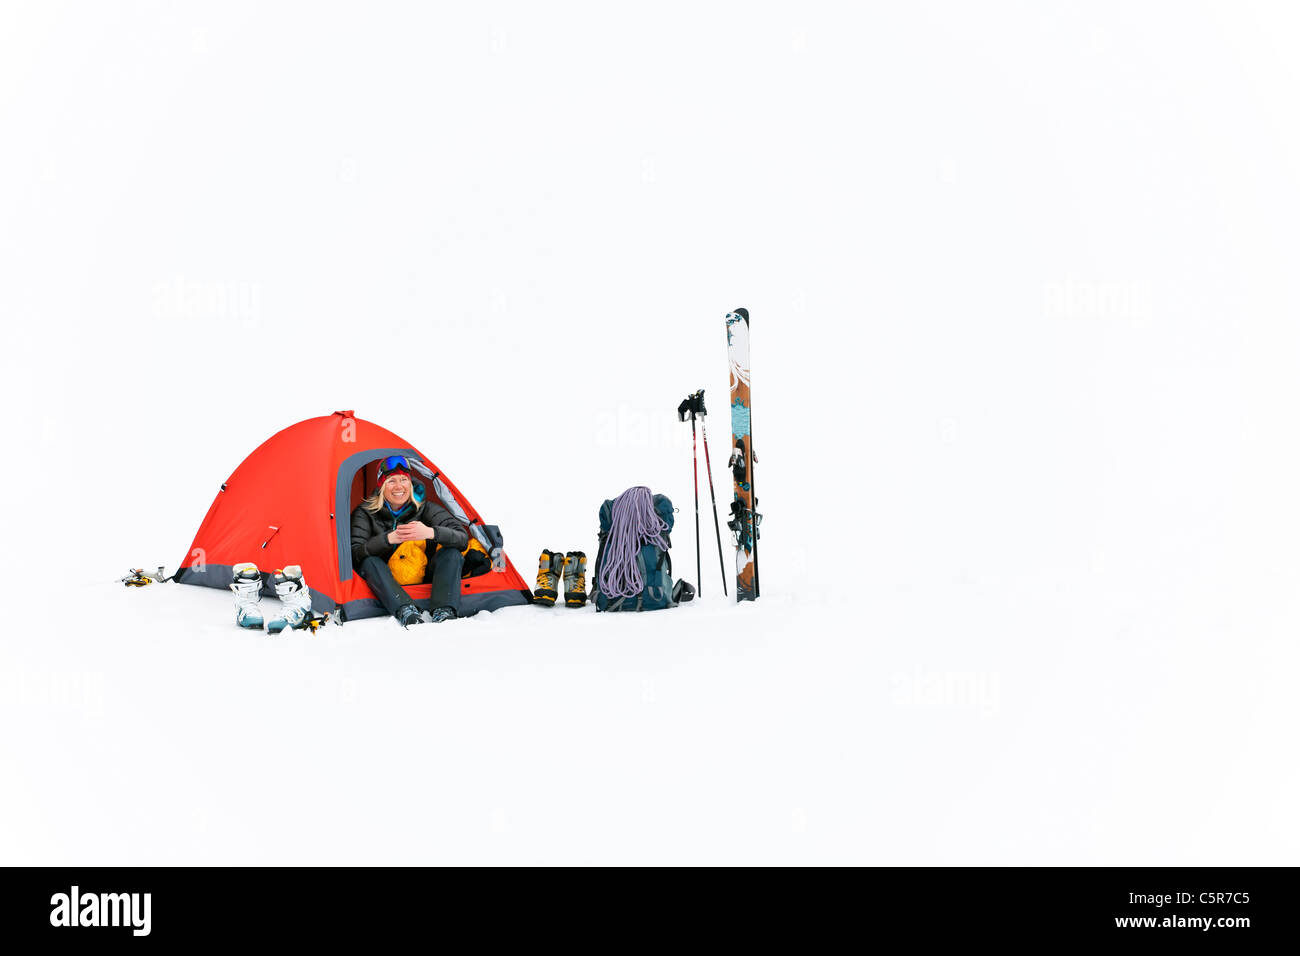 Ein glücklicher Camper camping auf Schnee. Stockfoto